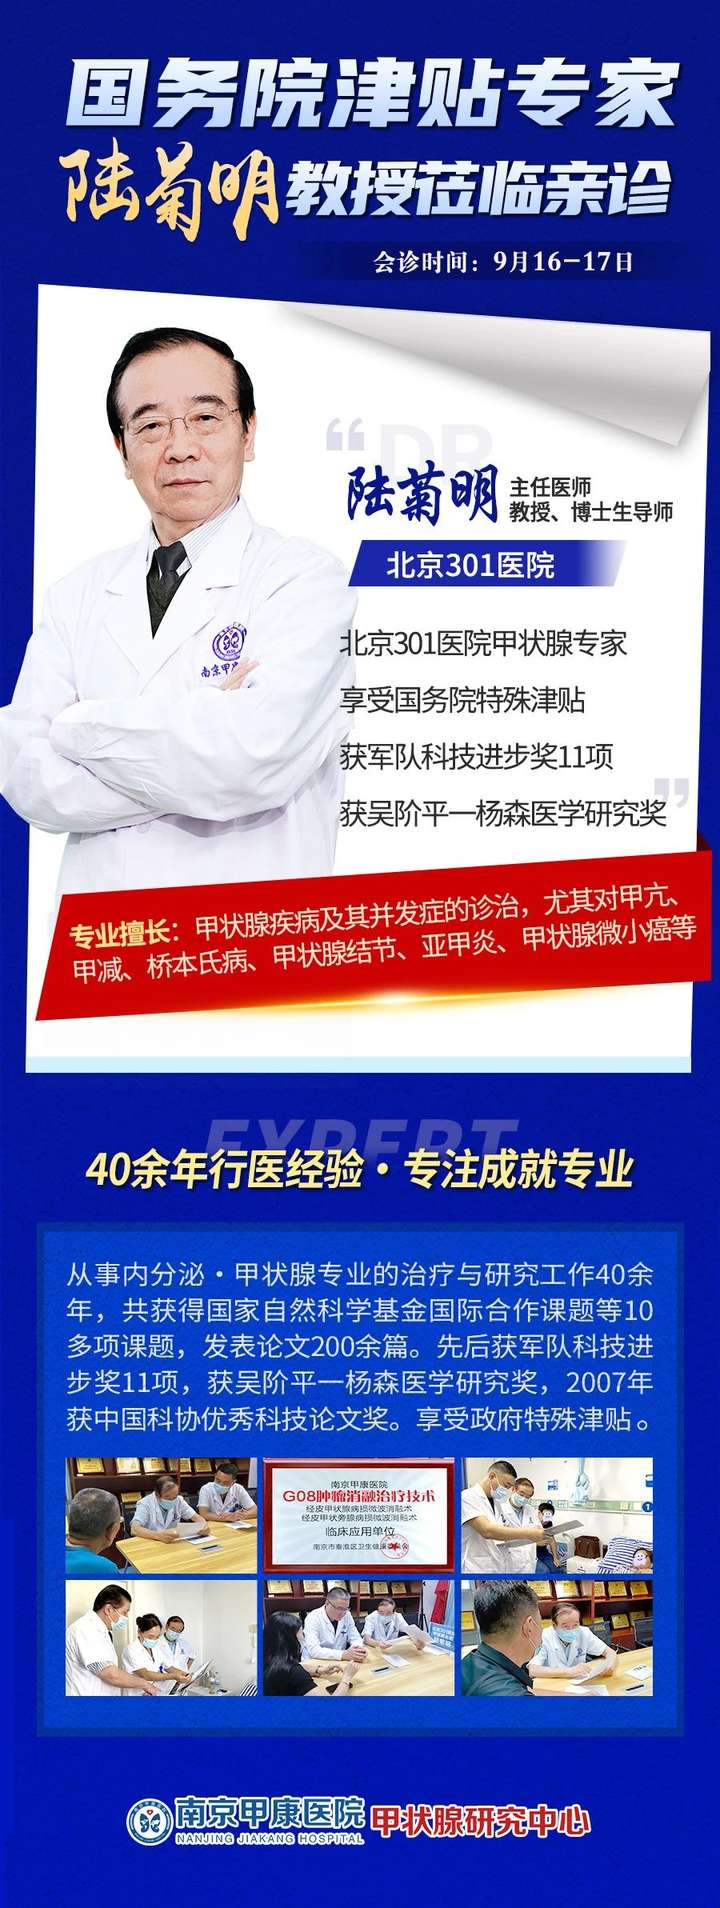 【好消息】9月16日、17日北京301医院甲状腺专家陆菊明教授将莅临南京甲康医院公益会诊